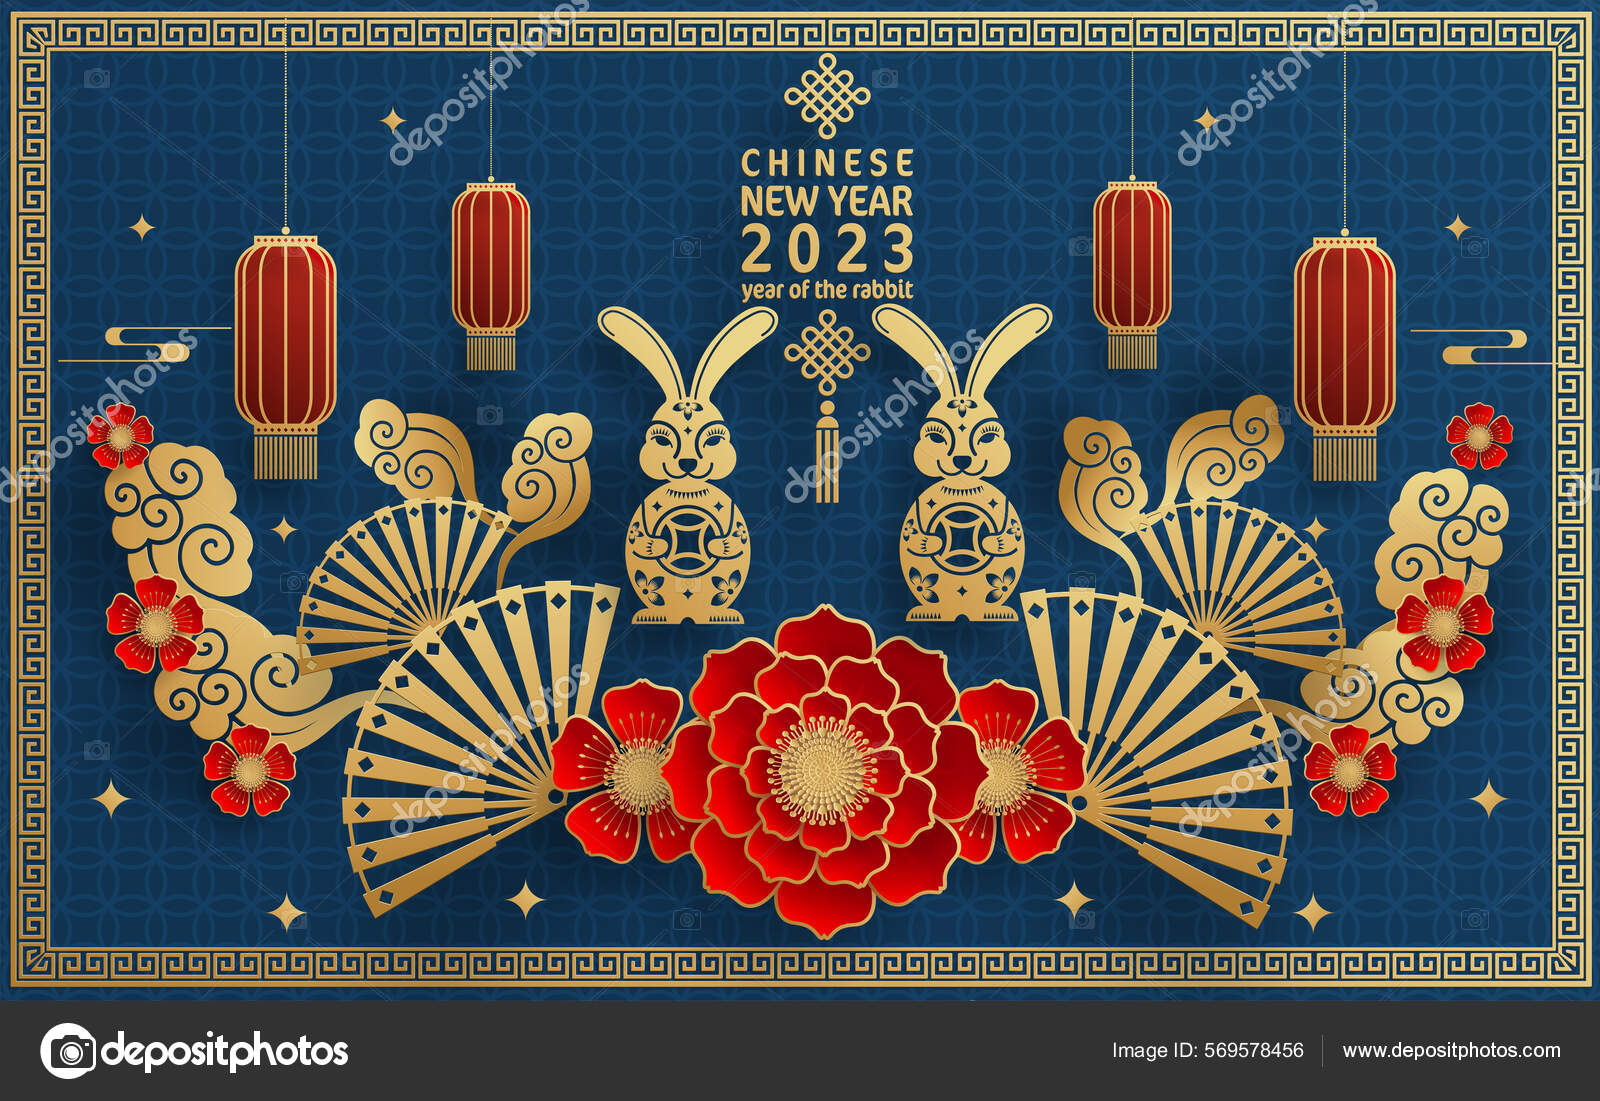 Tết Trung Quốc: Bạn có muốn khám phá những nét độc đáo của Tết Trung Quốc và văn hóa truyền thống của đất nước huyền thoại này? Chúng tôi tổ chức các hoạt động đặc sắc, góp phần giúp bạn hiểu rõ hơn về Tết Trung Quốc, từ lịch sử, nghệ thuật đến đặc sản. Hãy cùng chúng tôi chào đón một mùa xuân mới đầy sắc màu và tươi vui.